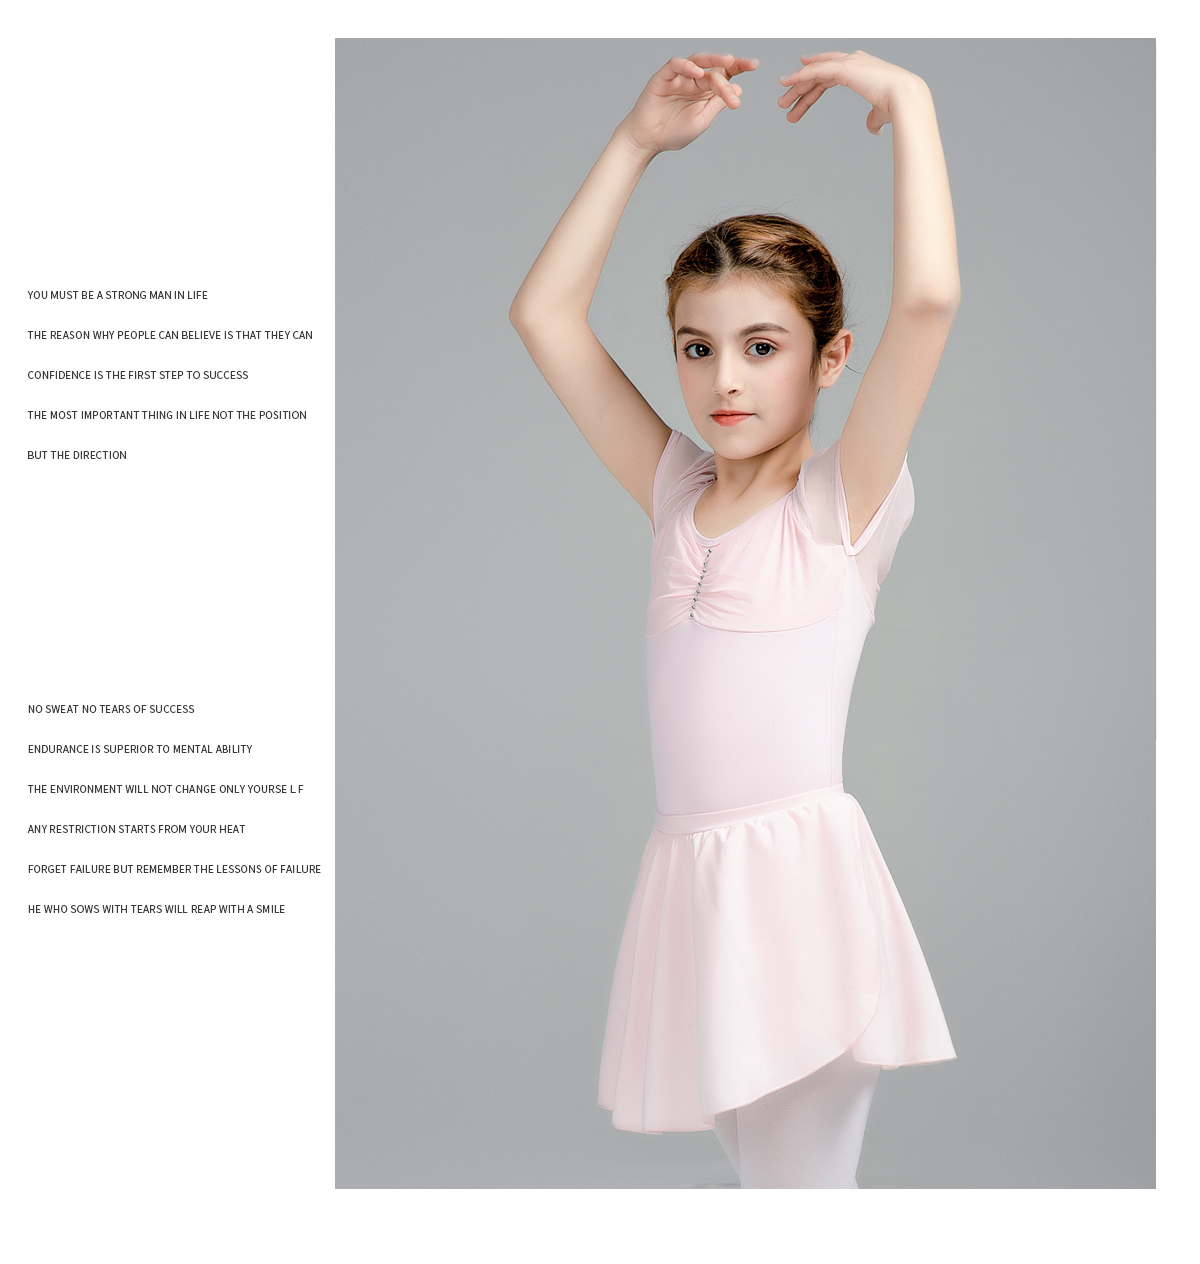 蹈服练功服女童短袖夏季芭蕾舞服装0302224